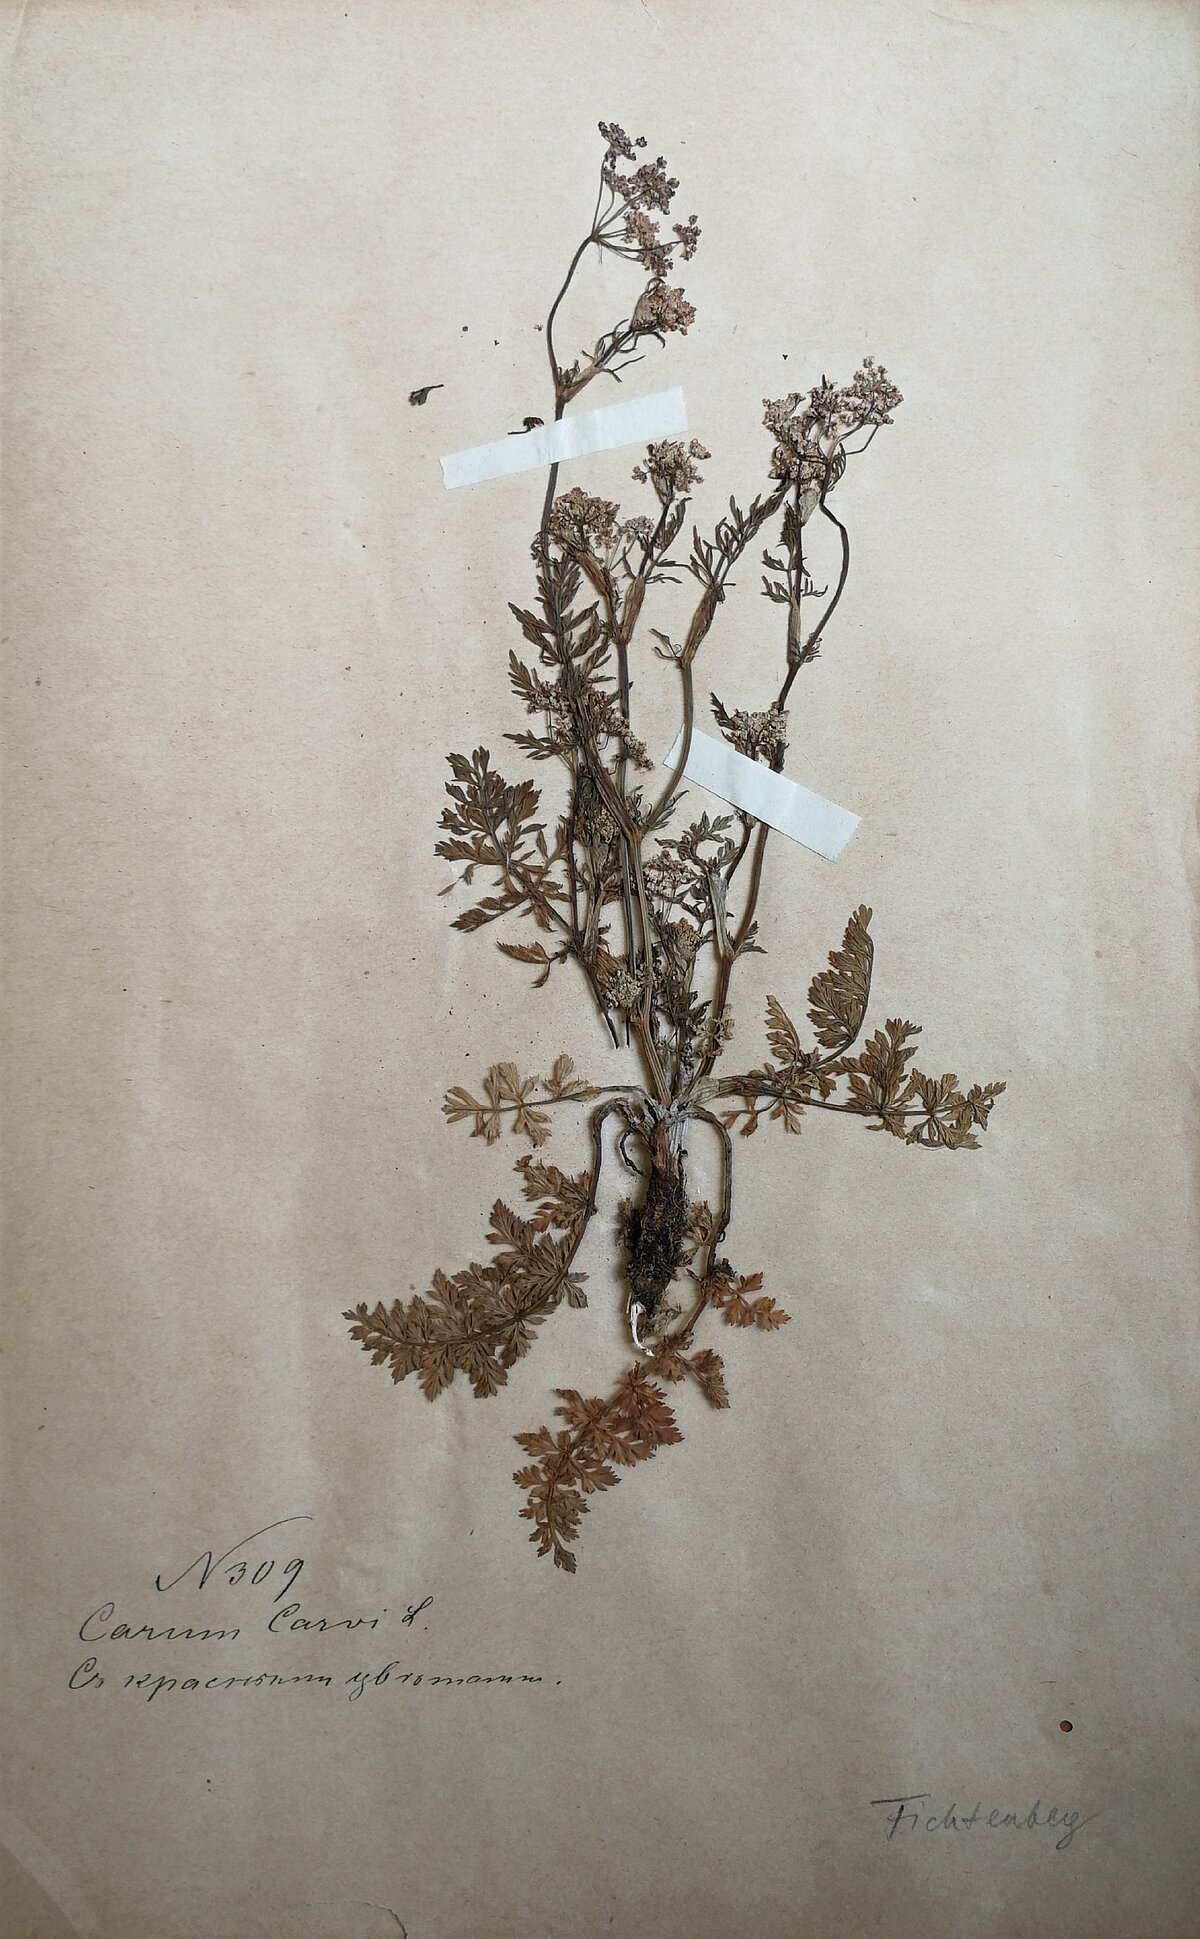 Pļavas ķimenes herbārijs ar sarkaniem ziediem no Fichtenberga herbārija, ievākts visticamāk 19. gadsimta beigās. LU Muzeja krājums